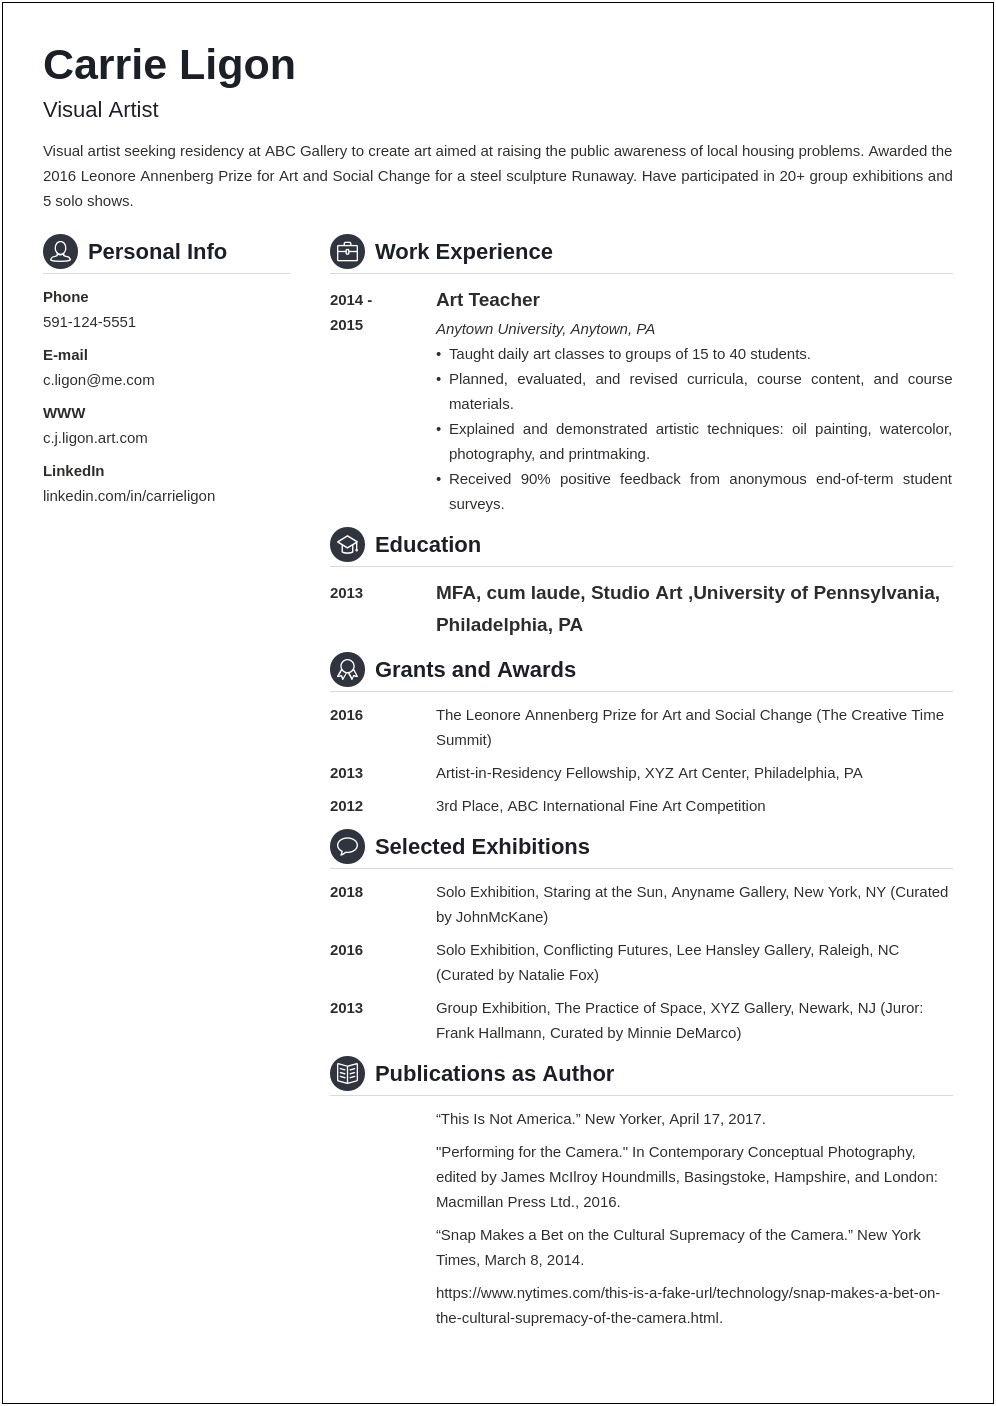 Resume Job Description For Artist